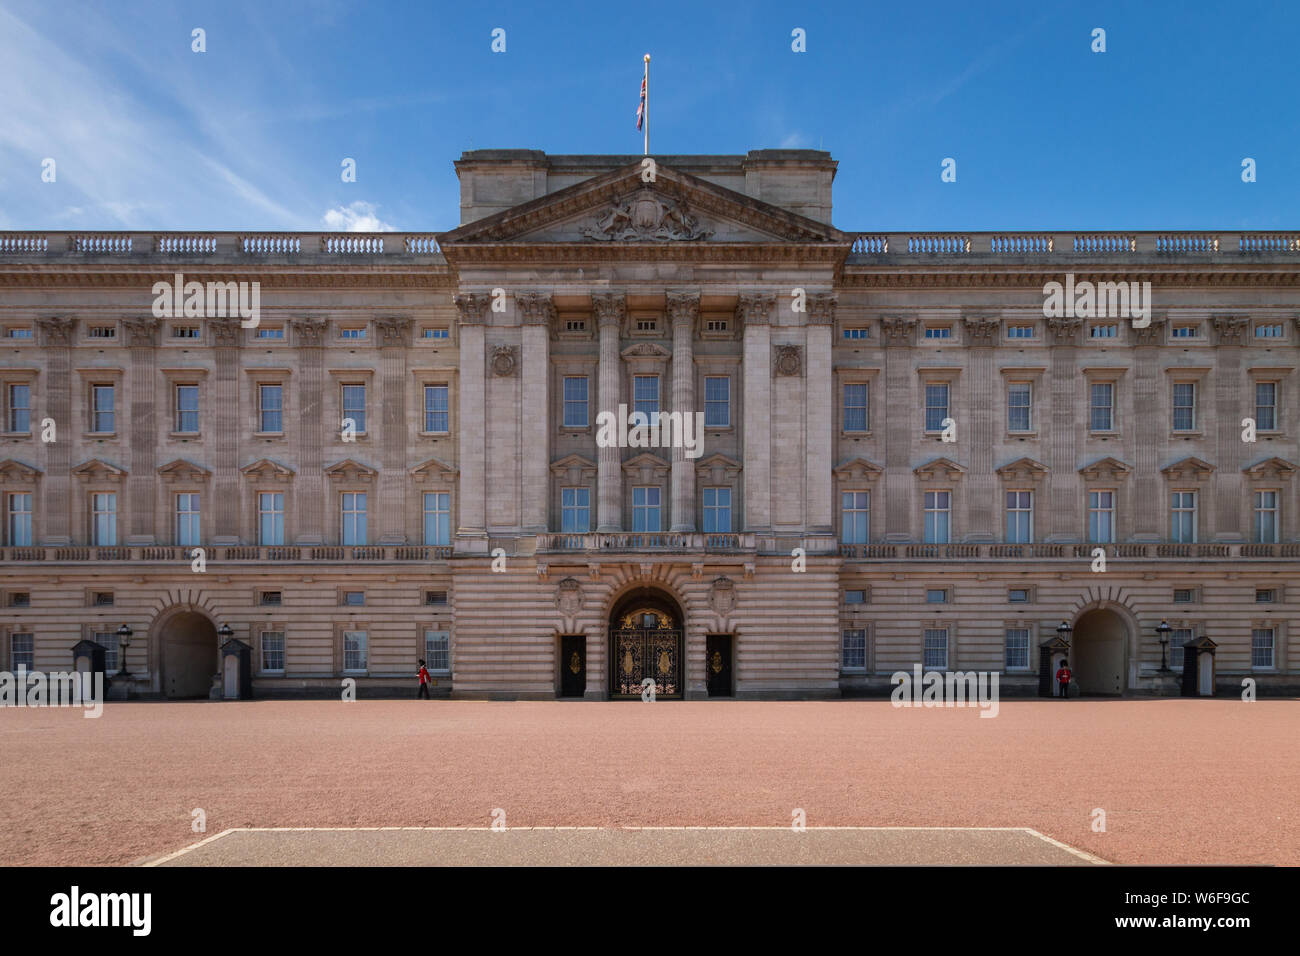 Fachada del Palacio de Buckingham, con dos miembros de la guardia frente Queens, Londres, Reino Unido. Foto de stock